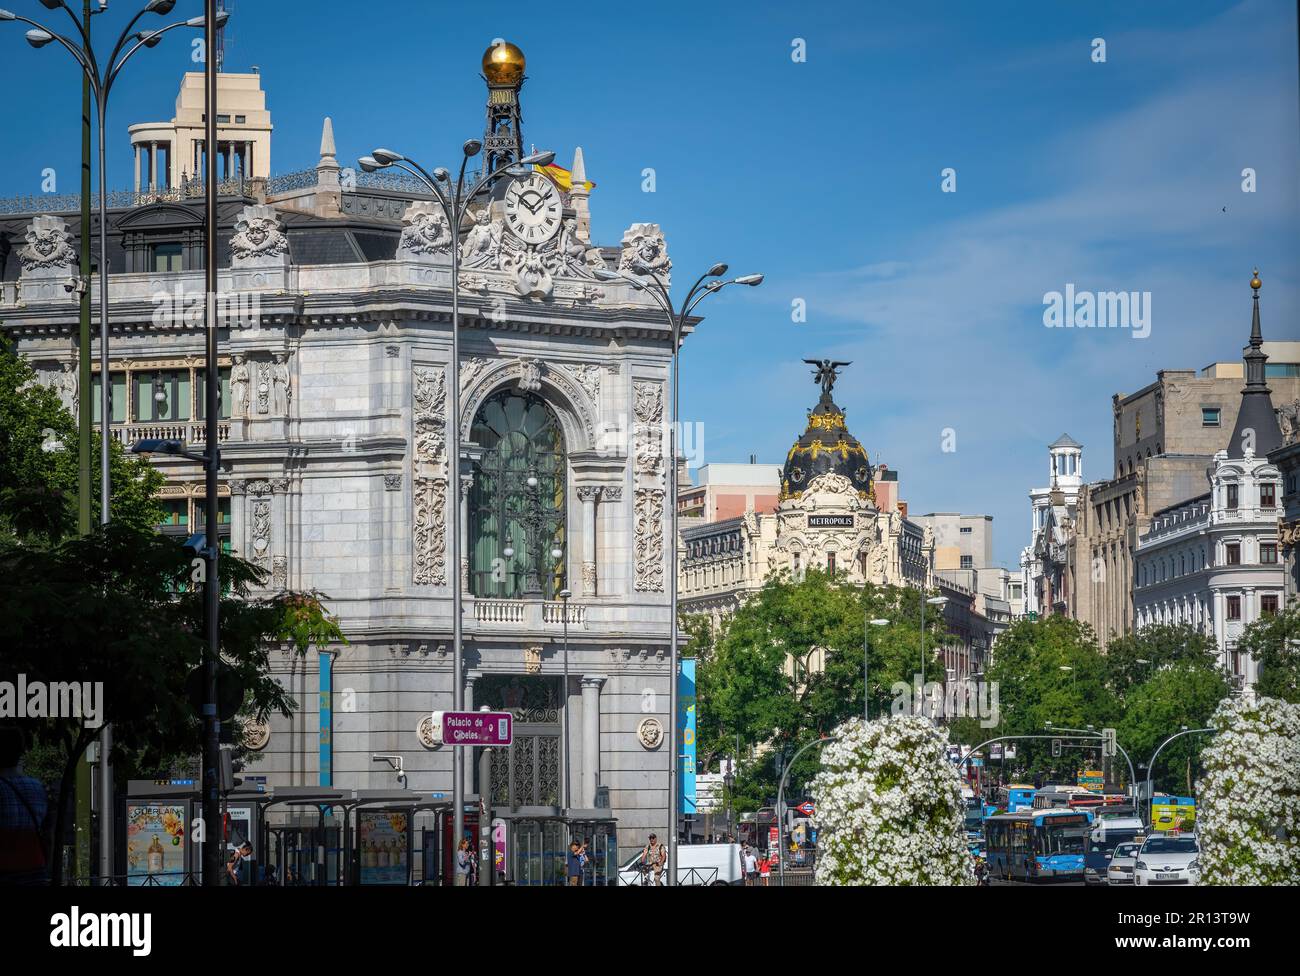 Calle de Alcala mit Bank of Spain (Banco de España) und Metropolis-Gebäude - Madrid, Spanien Stockfoto